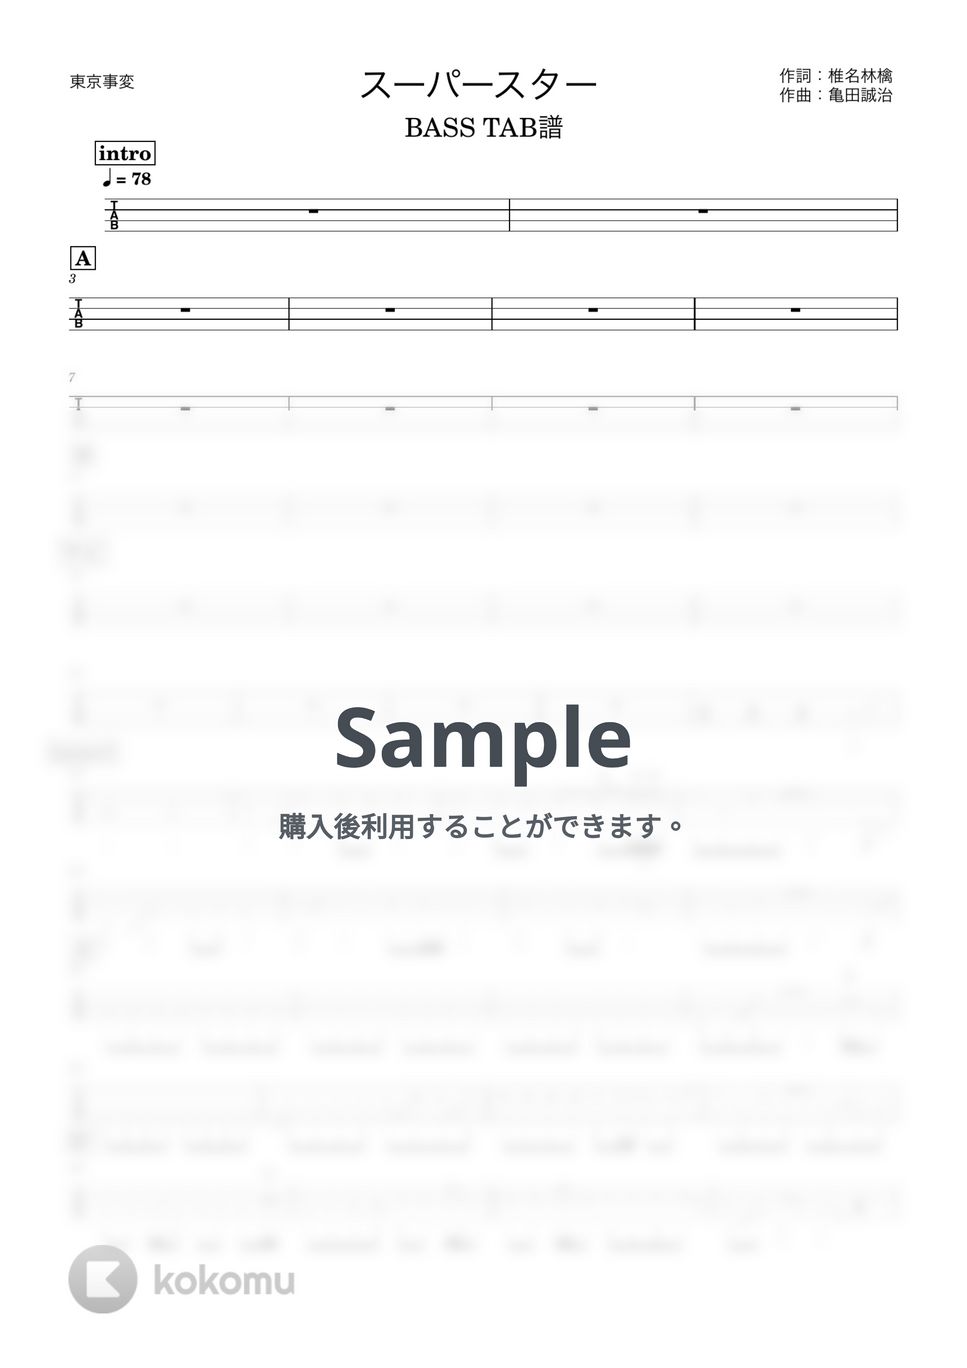 東京事変 - スーパースター (『ベースTAB譜』4弦ベース対応) by 箱譜屋